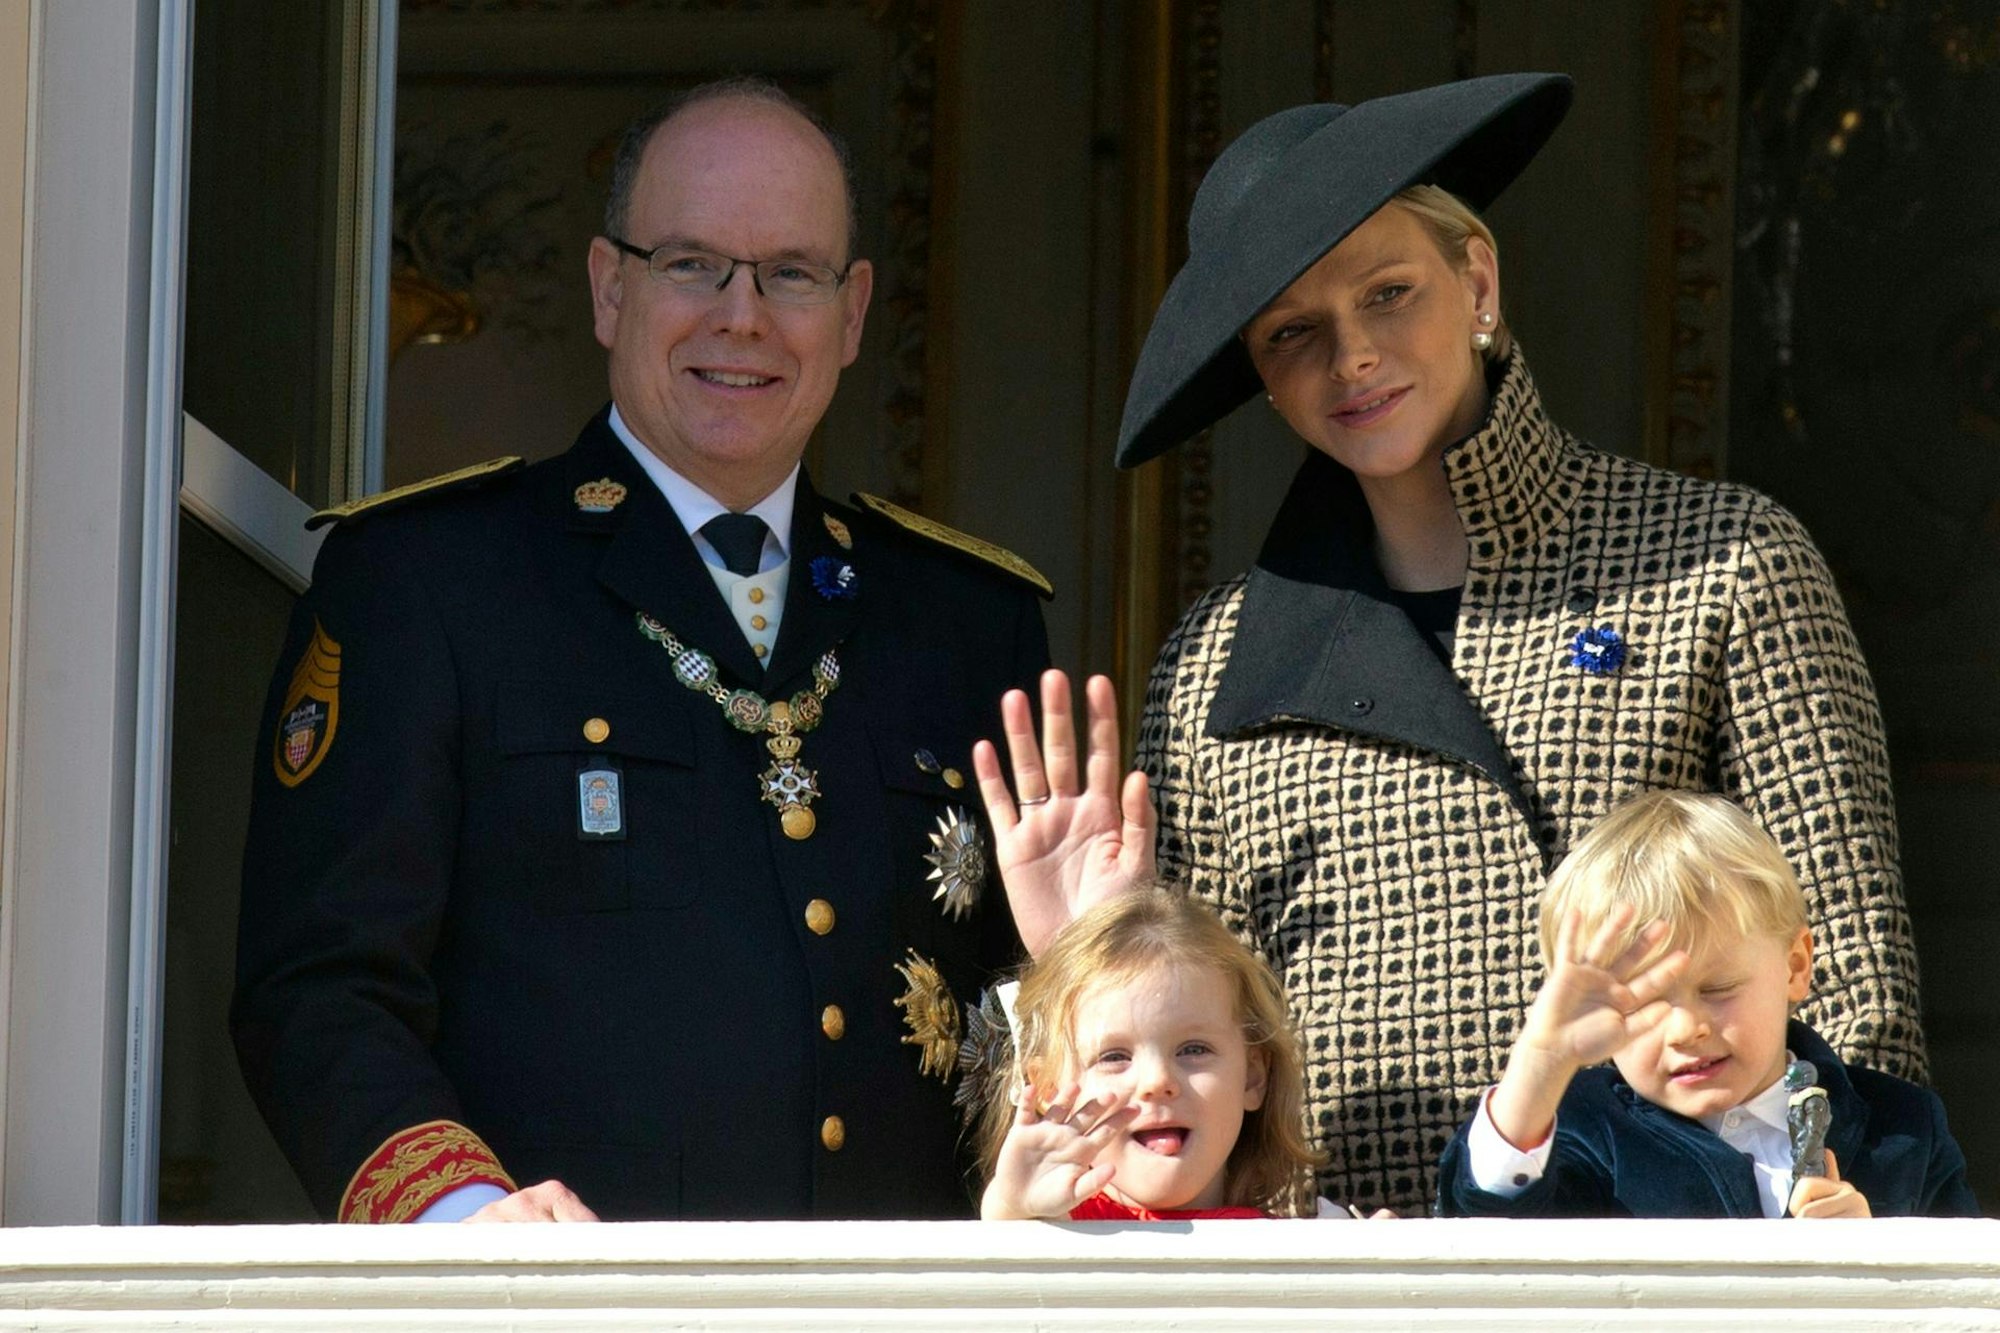 Fürst Albert II. von Monaco und Fürstin Charlene mit ihren Kindern Gabriella und Jacques während Feierlichkeiten 2018.